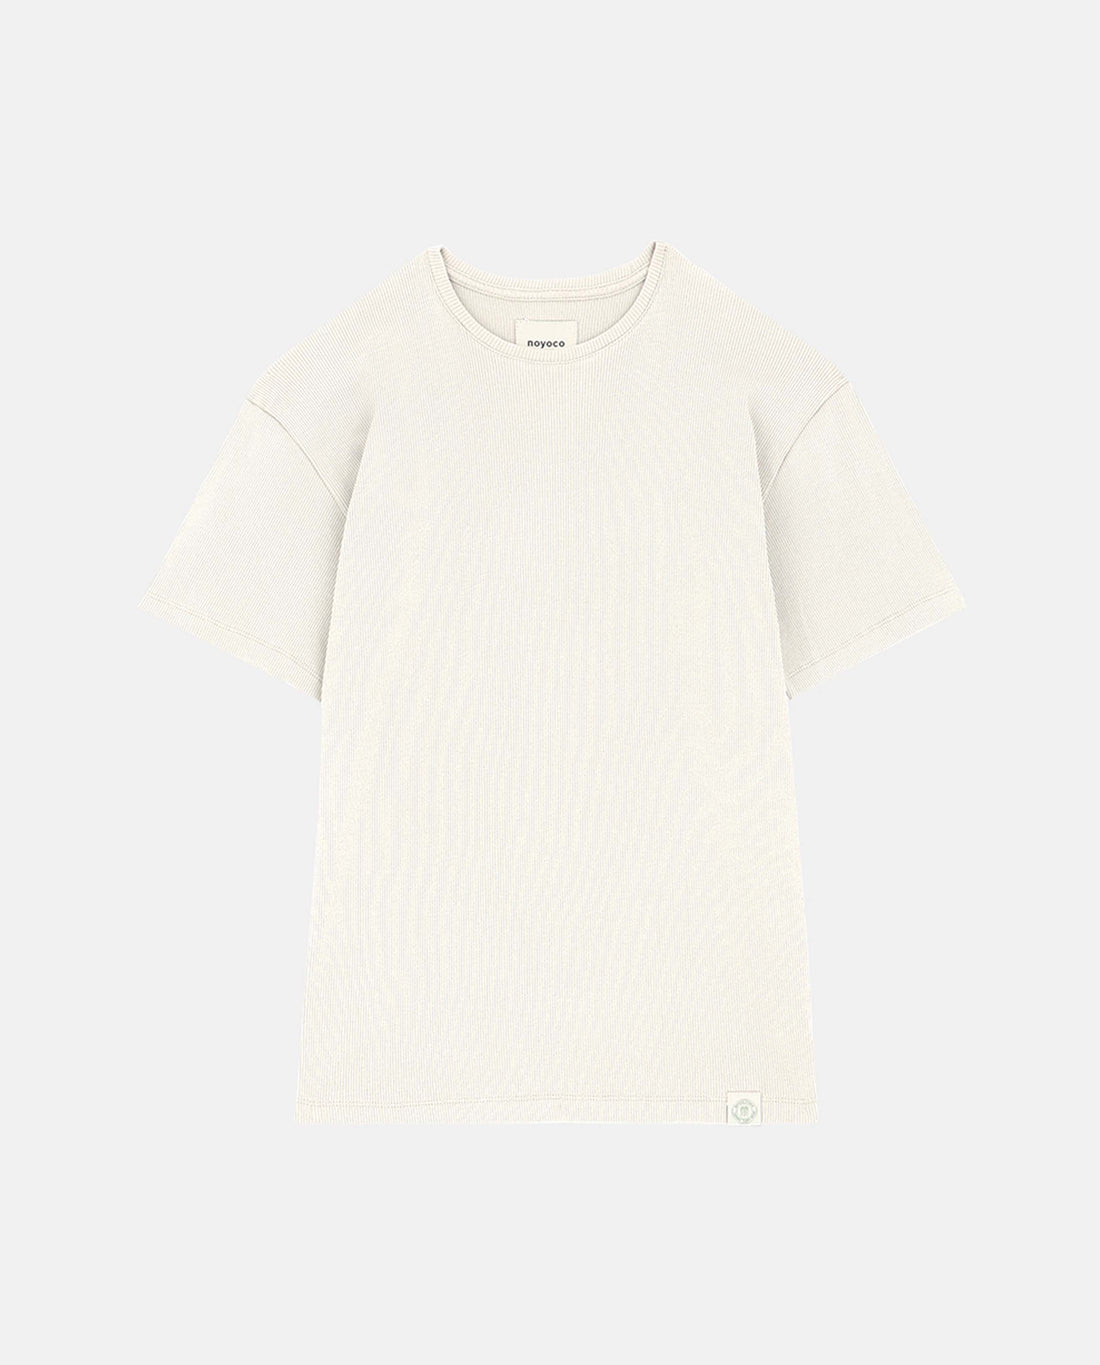 marché commun noyoco femme t-shirt manches courtes gobi coton biologique côtelé écru